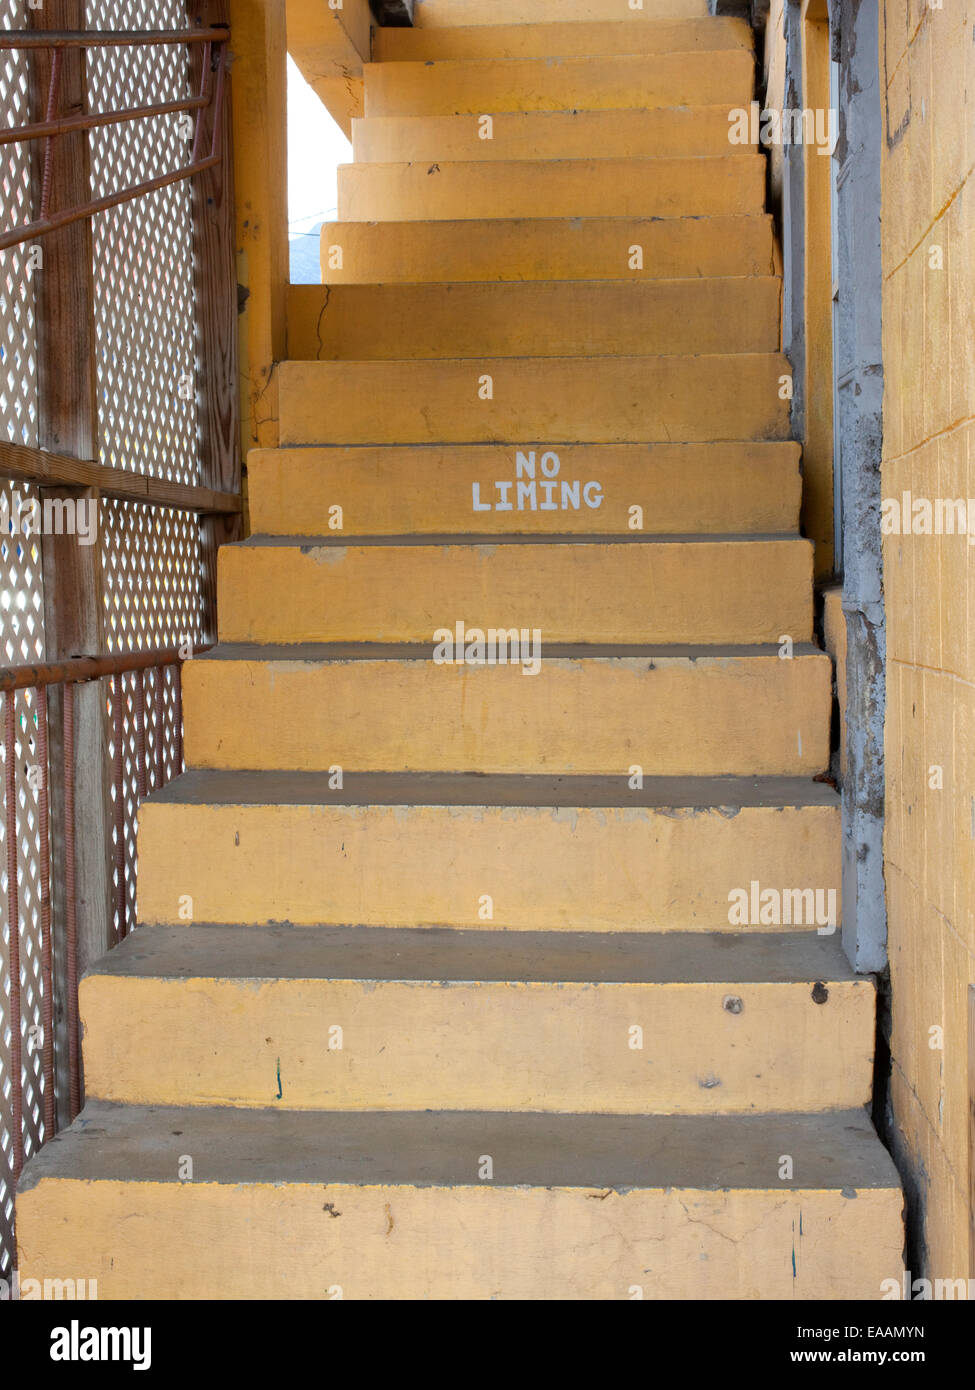 Escaliers avec 'non' chaulage sign Banque D'Images